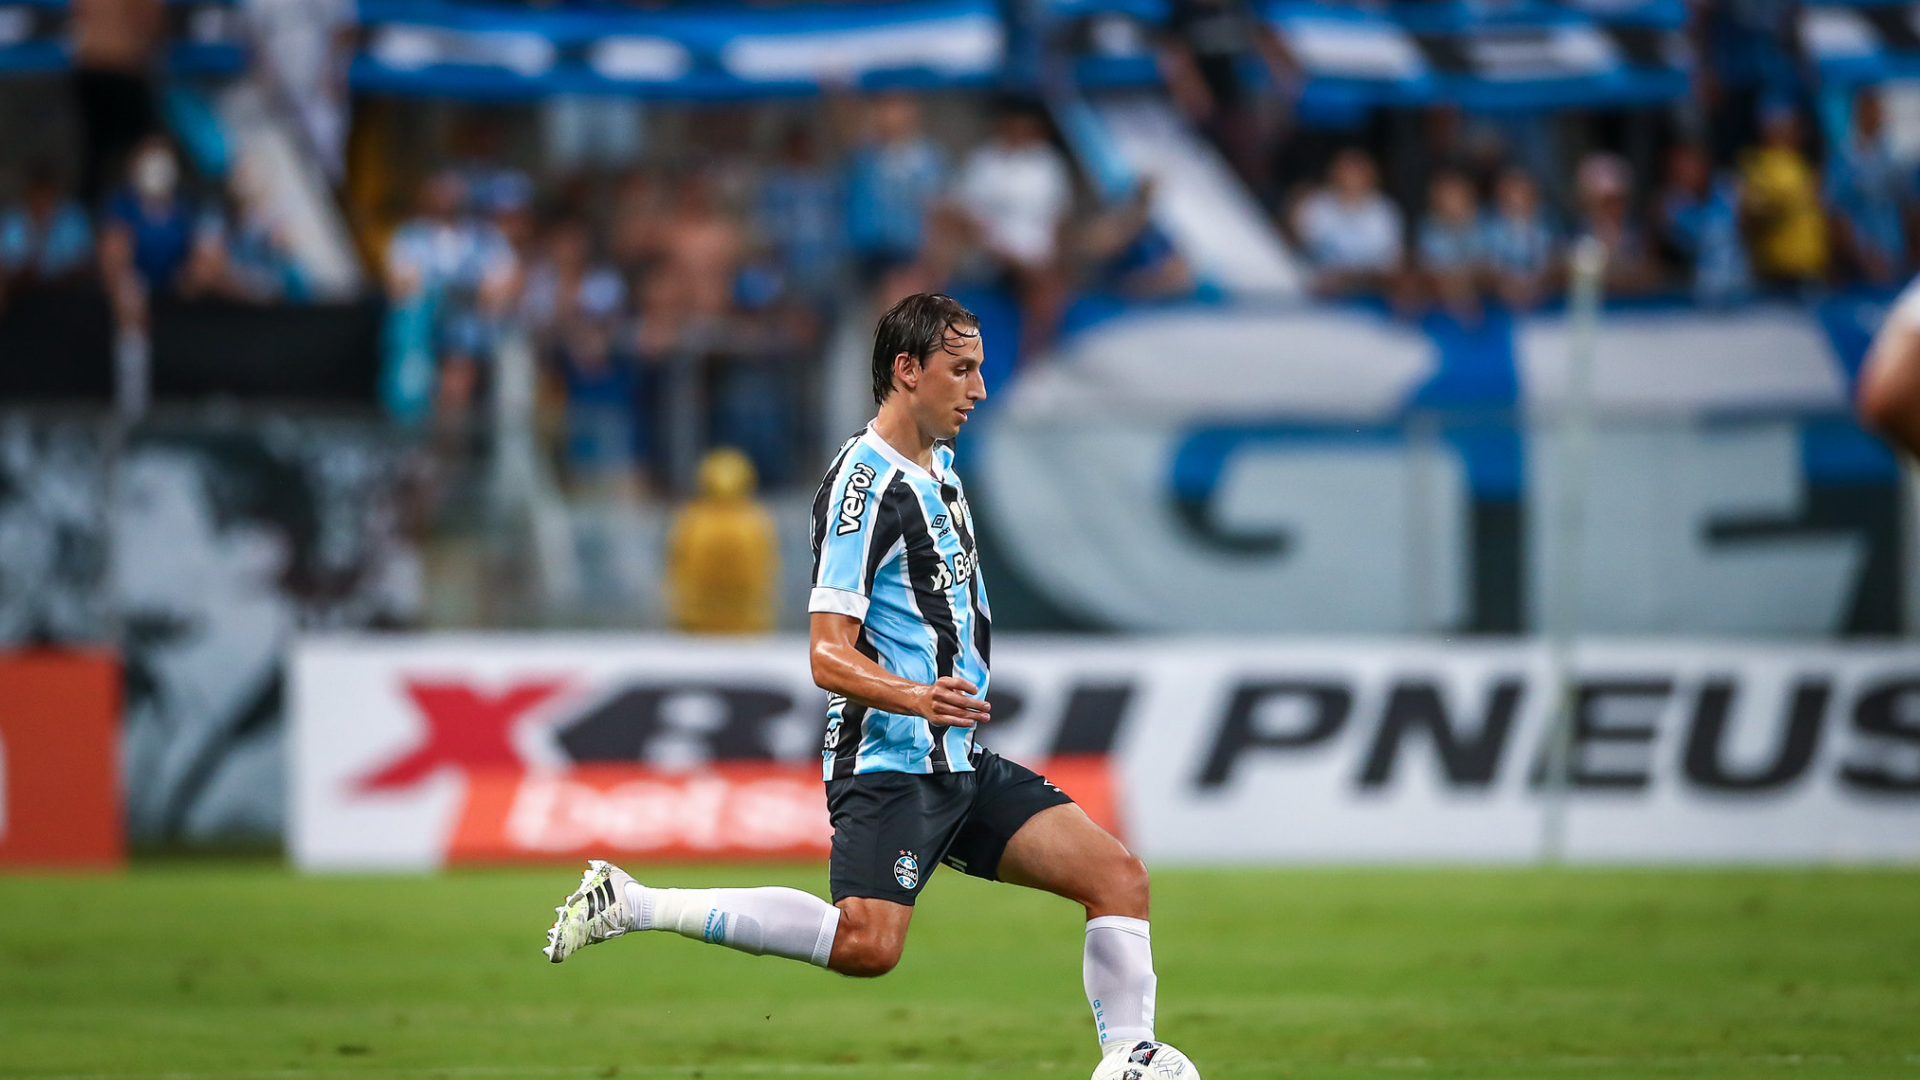 Geromel em ação no jogo do Grêmio